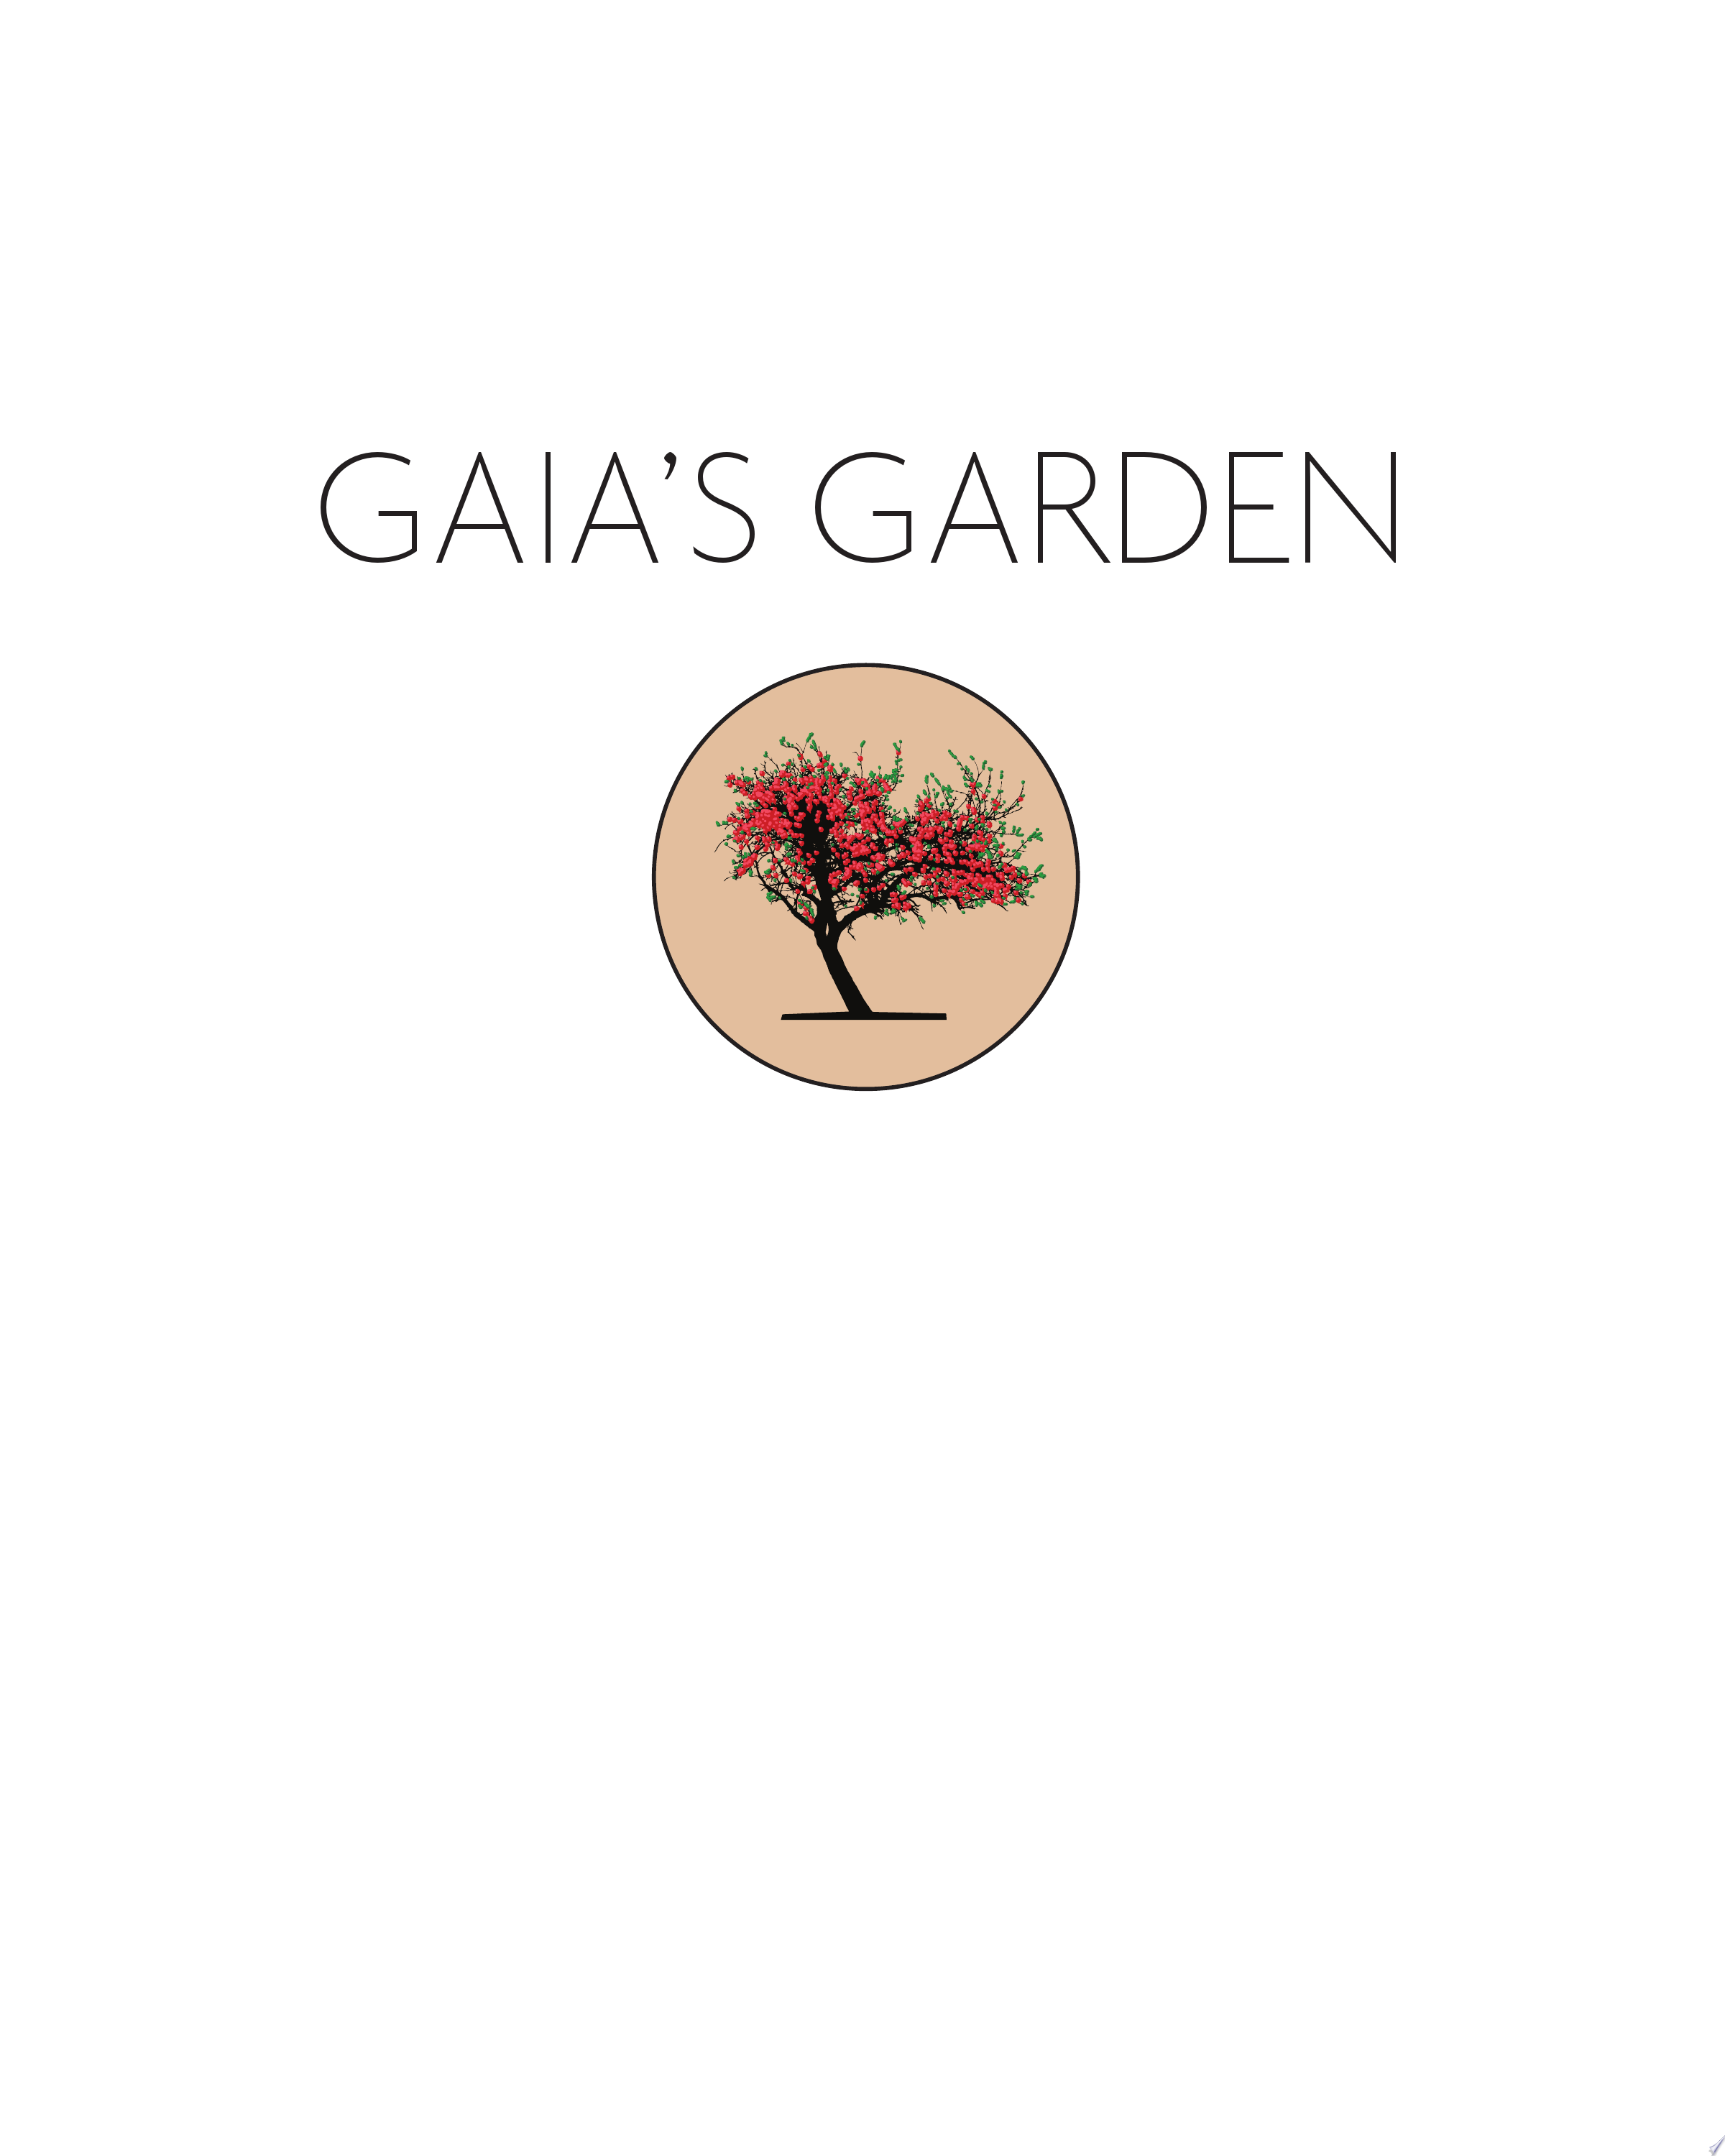 Image for "Gaia&#039;s Garden"